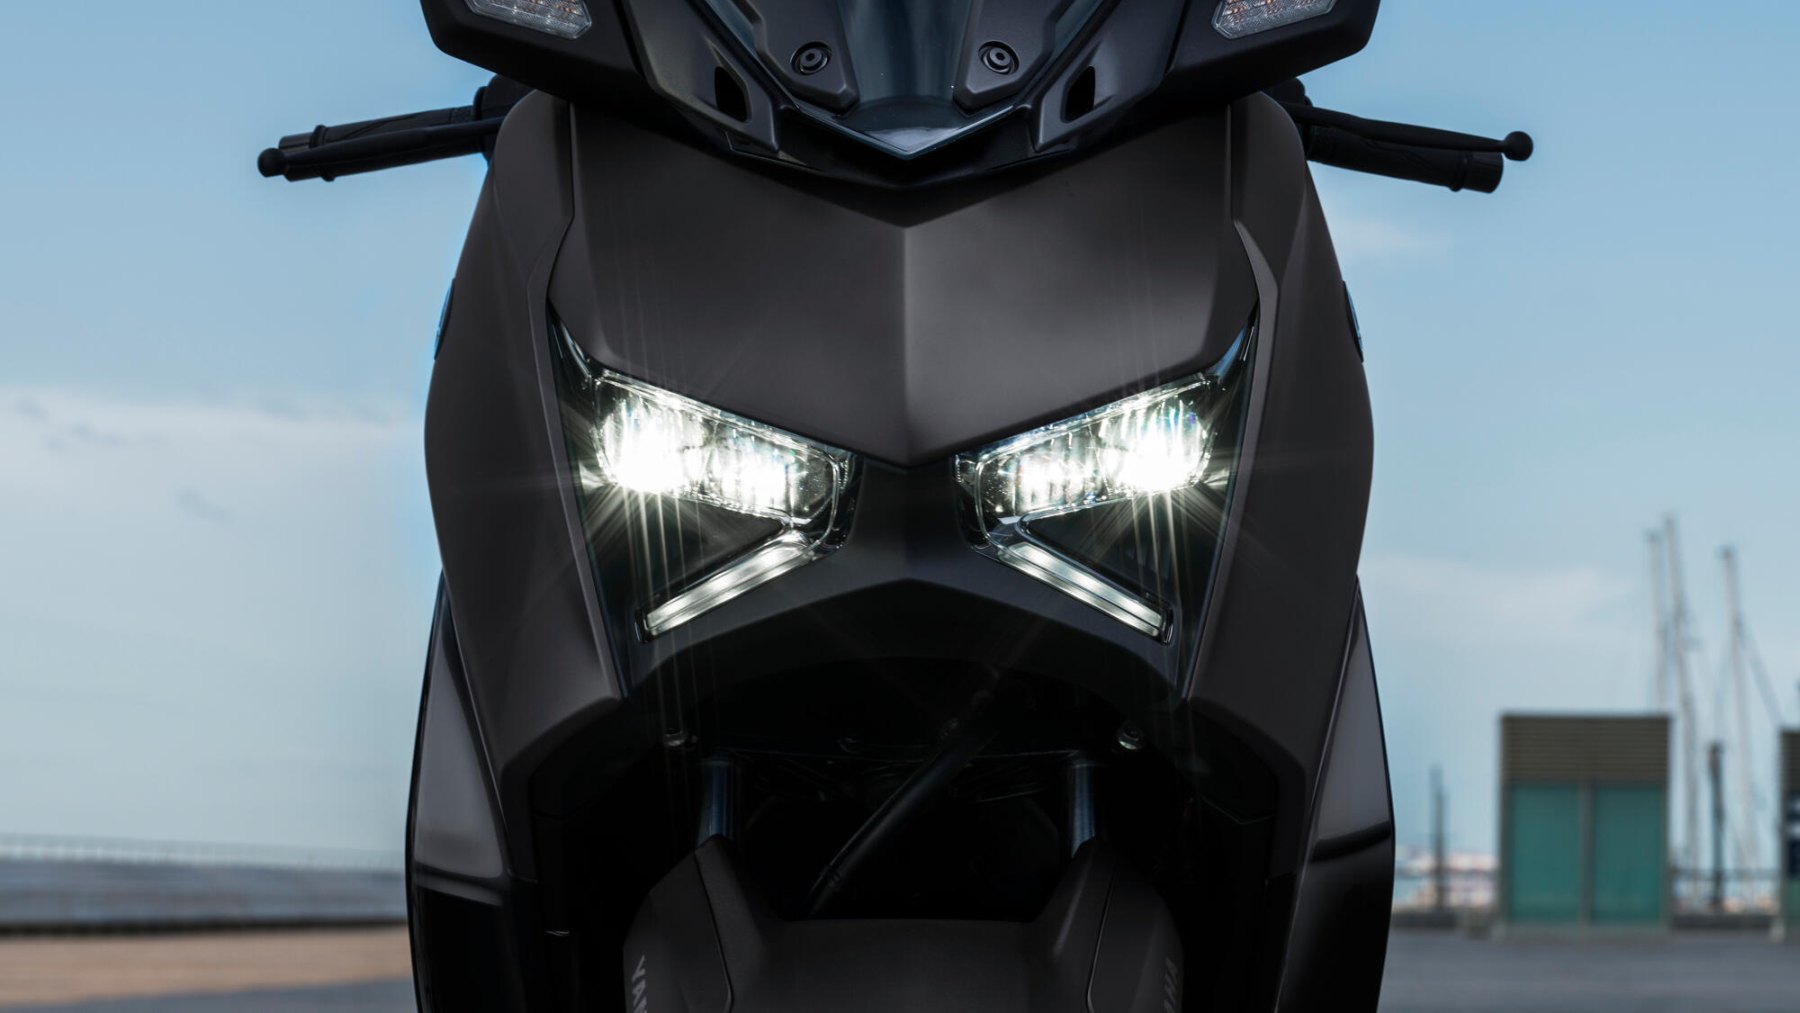 Vista frontal de la Yamaha X-Max 125cc mostrando su diseño de iluminación agresivo